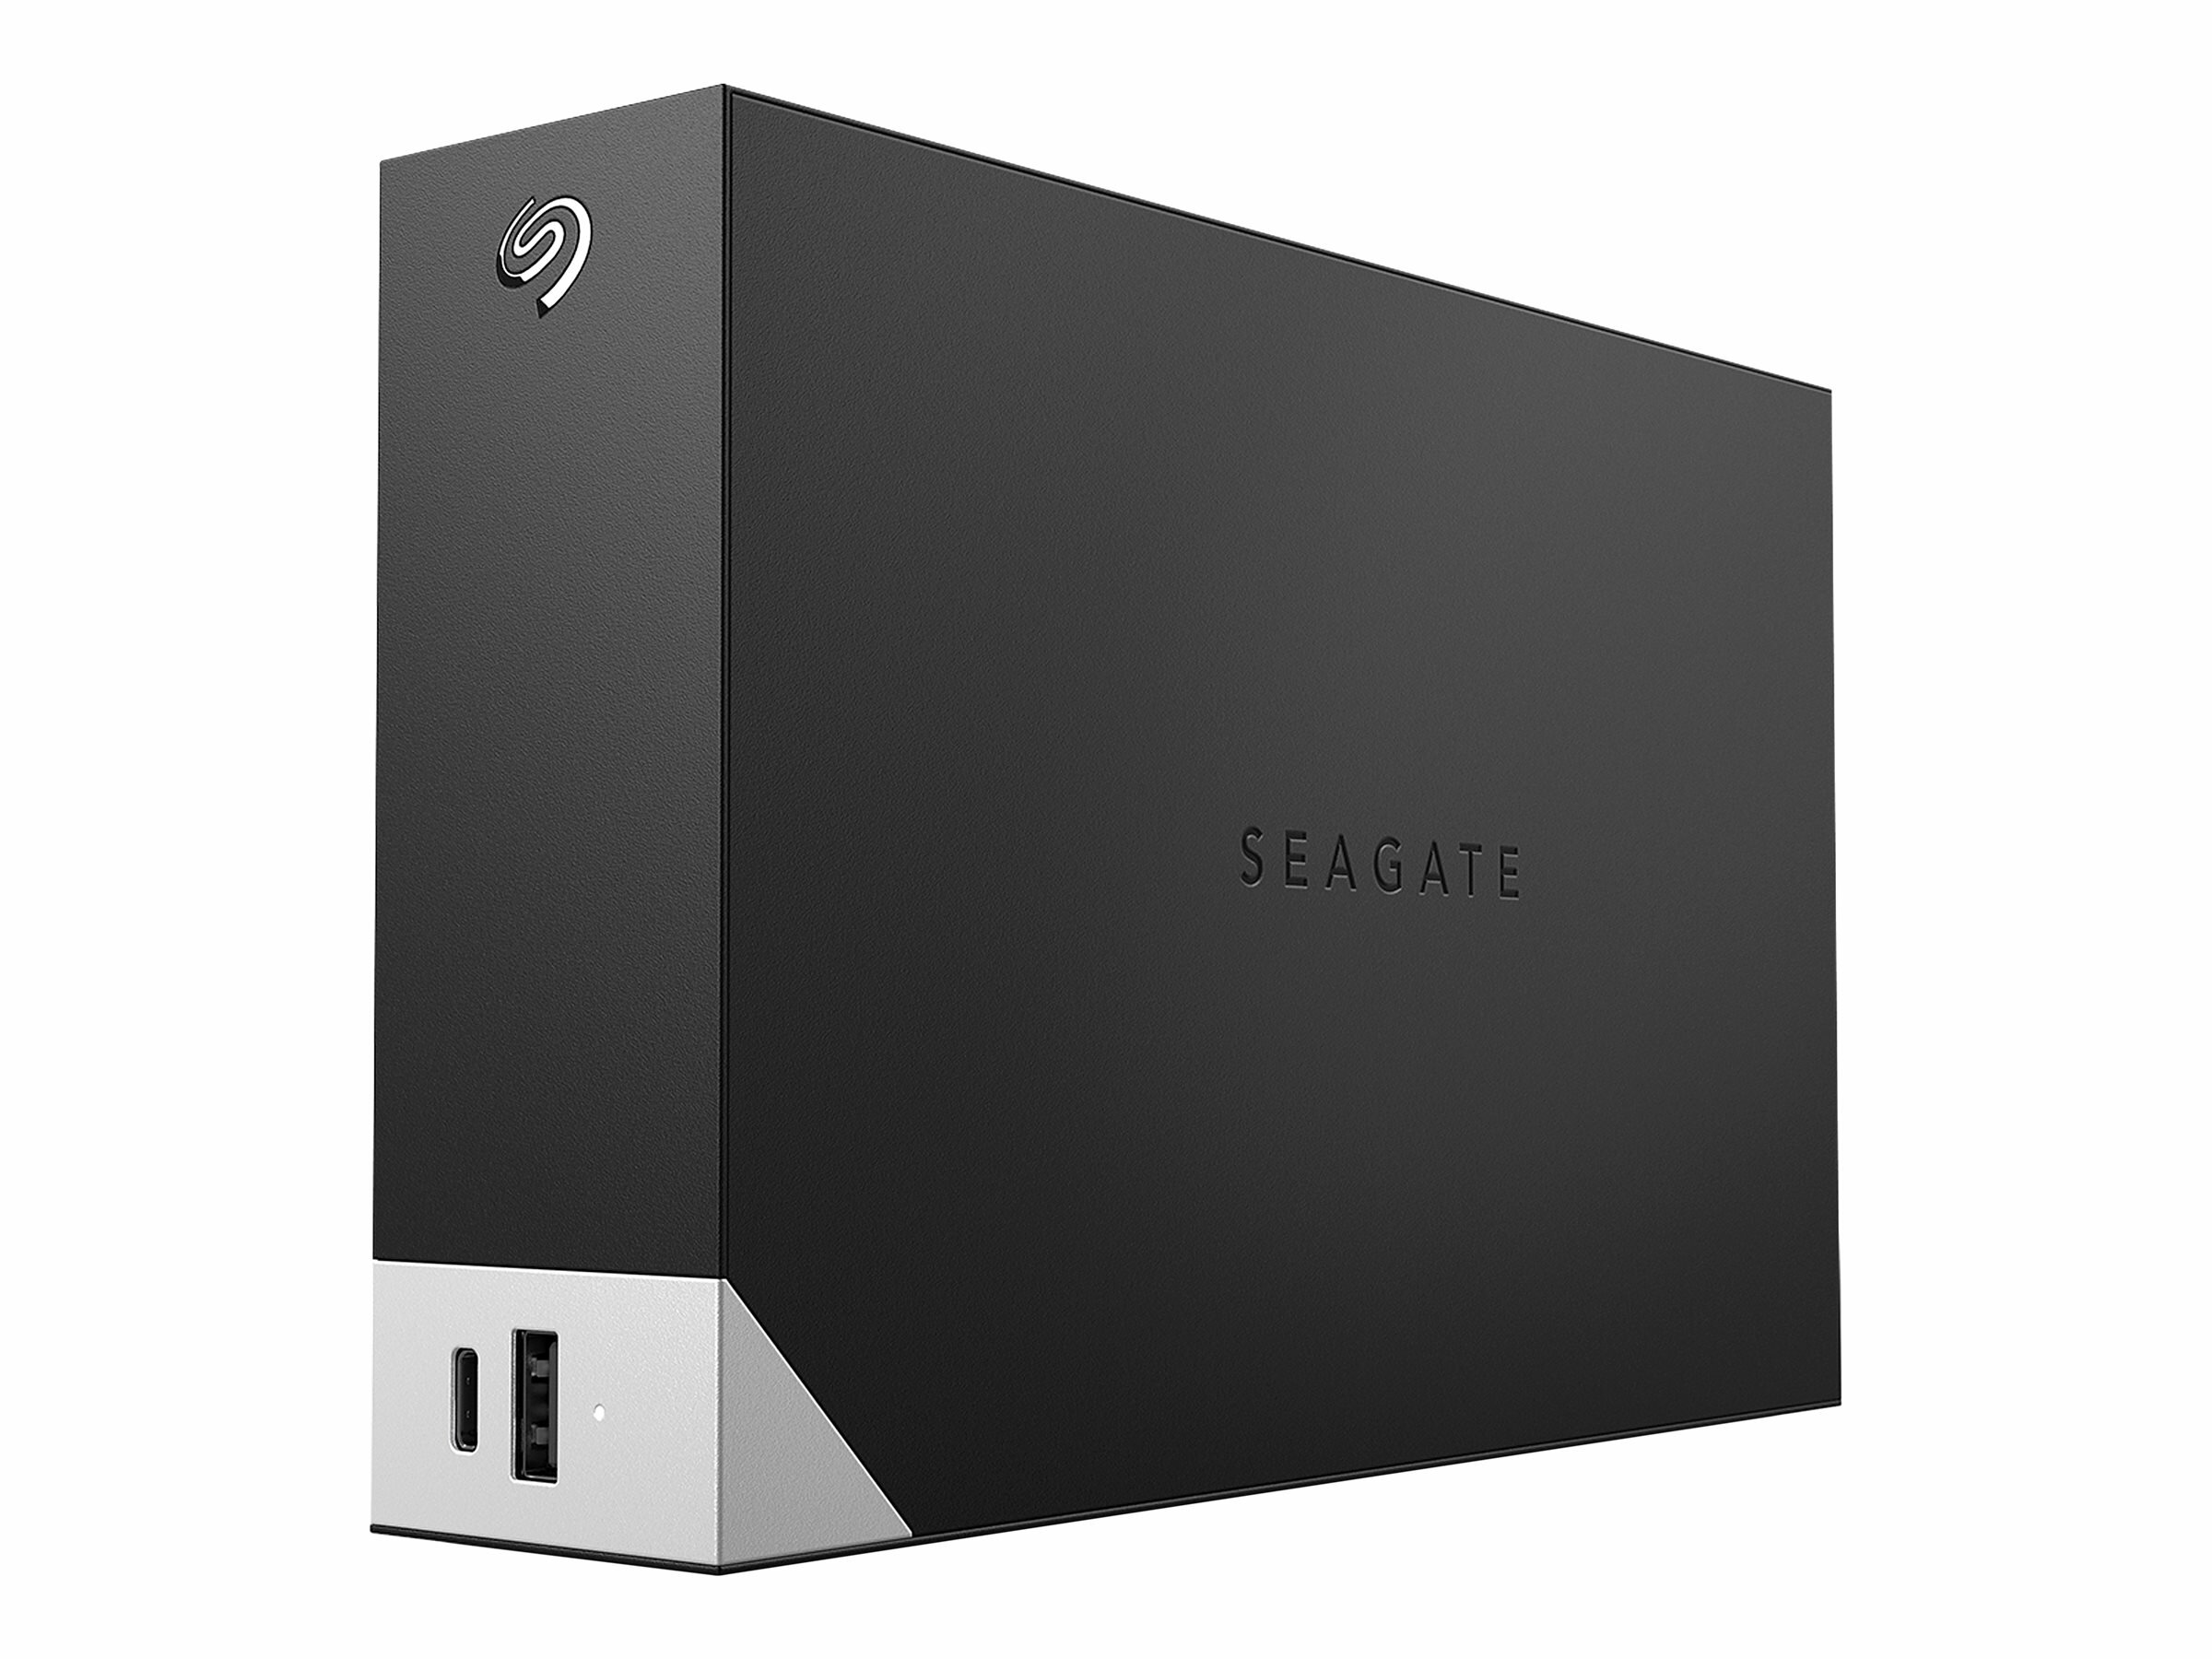 Dysk zewnętrzny Seagate STLC8000400 8 TB widoczny pod skosem